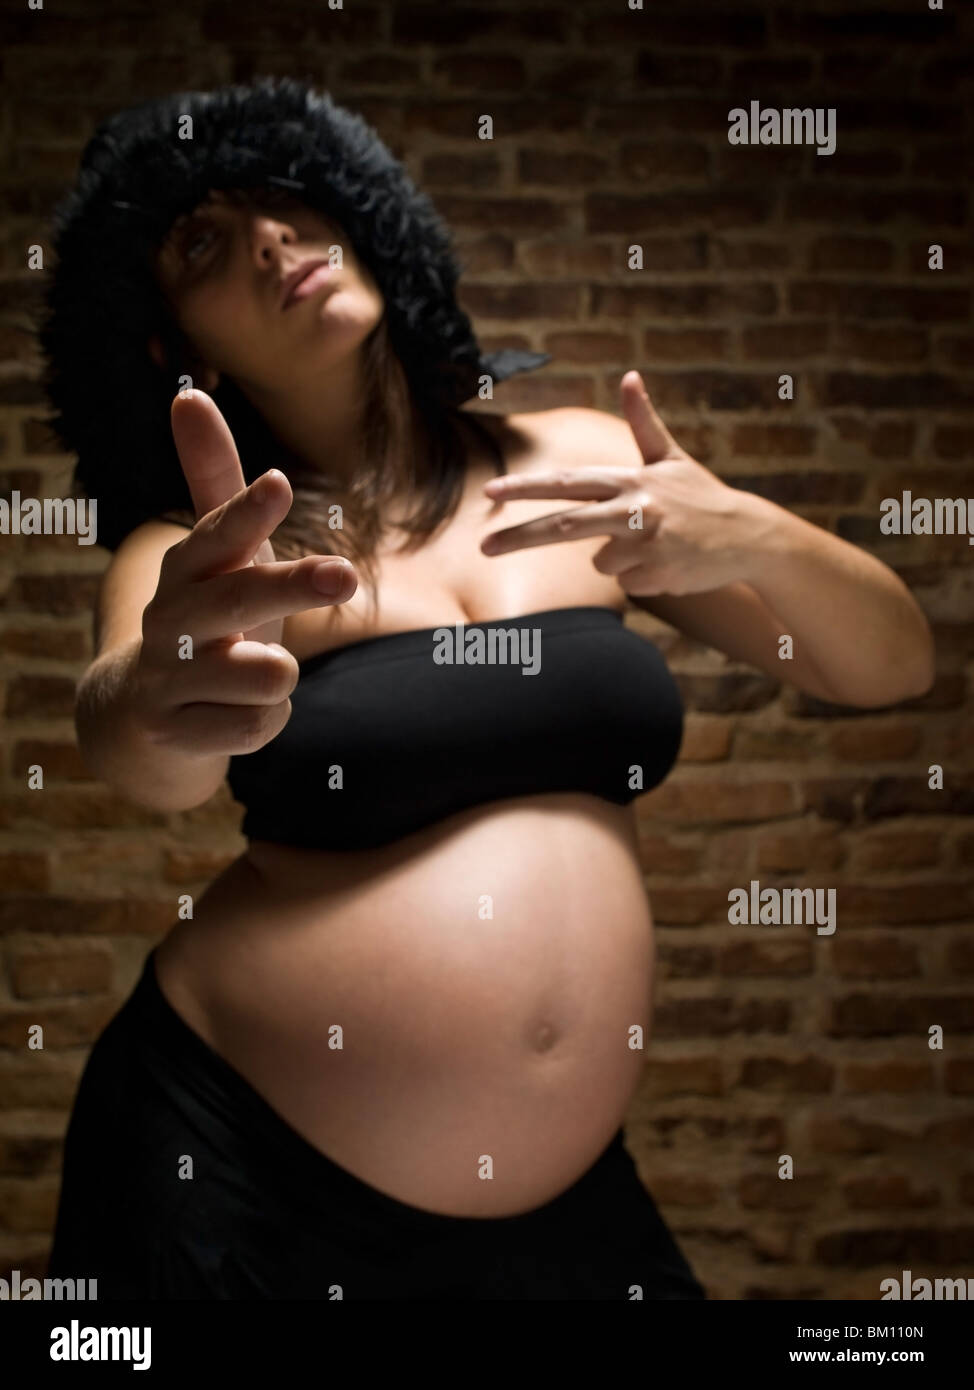 Una joven embarazada, gesticulando como ella estaba armado. Se centran en la mano. Foto de stock